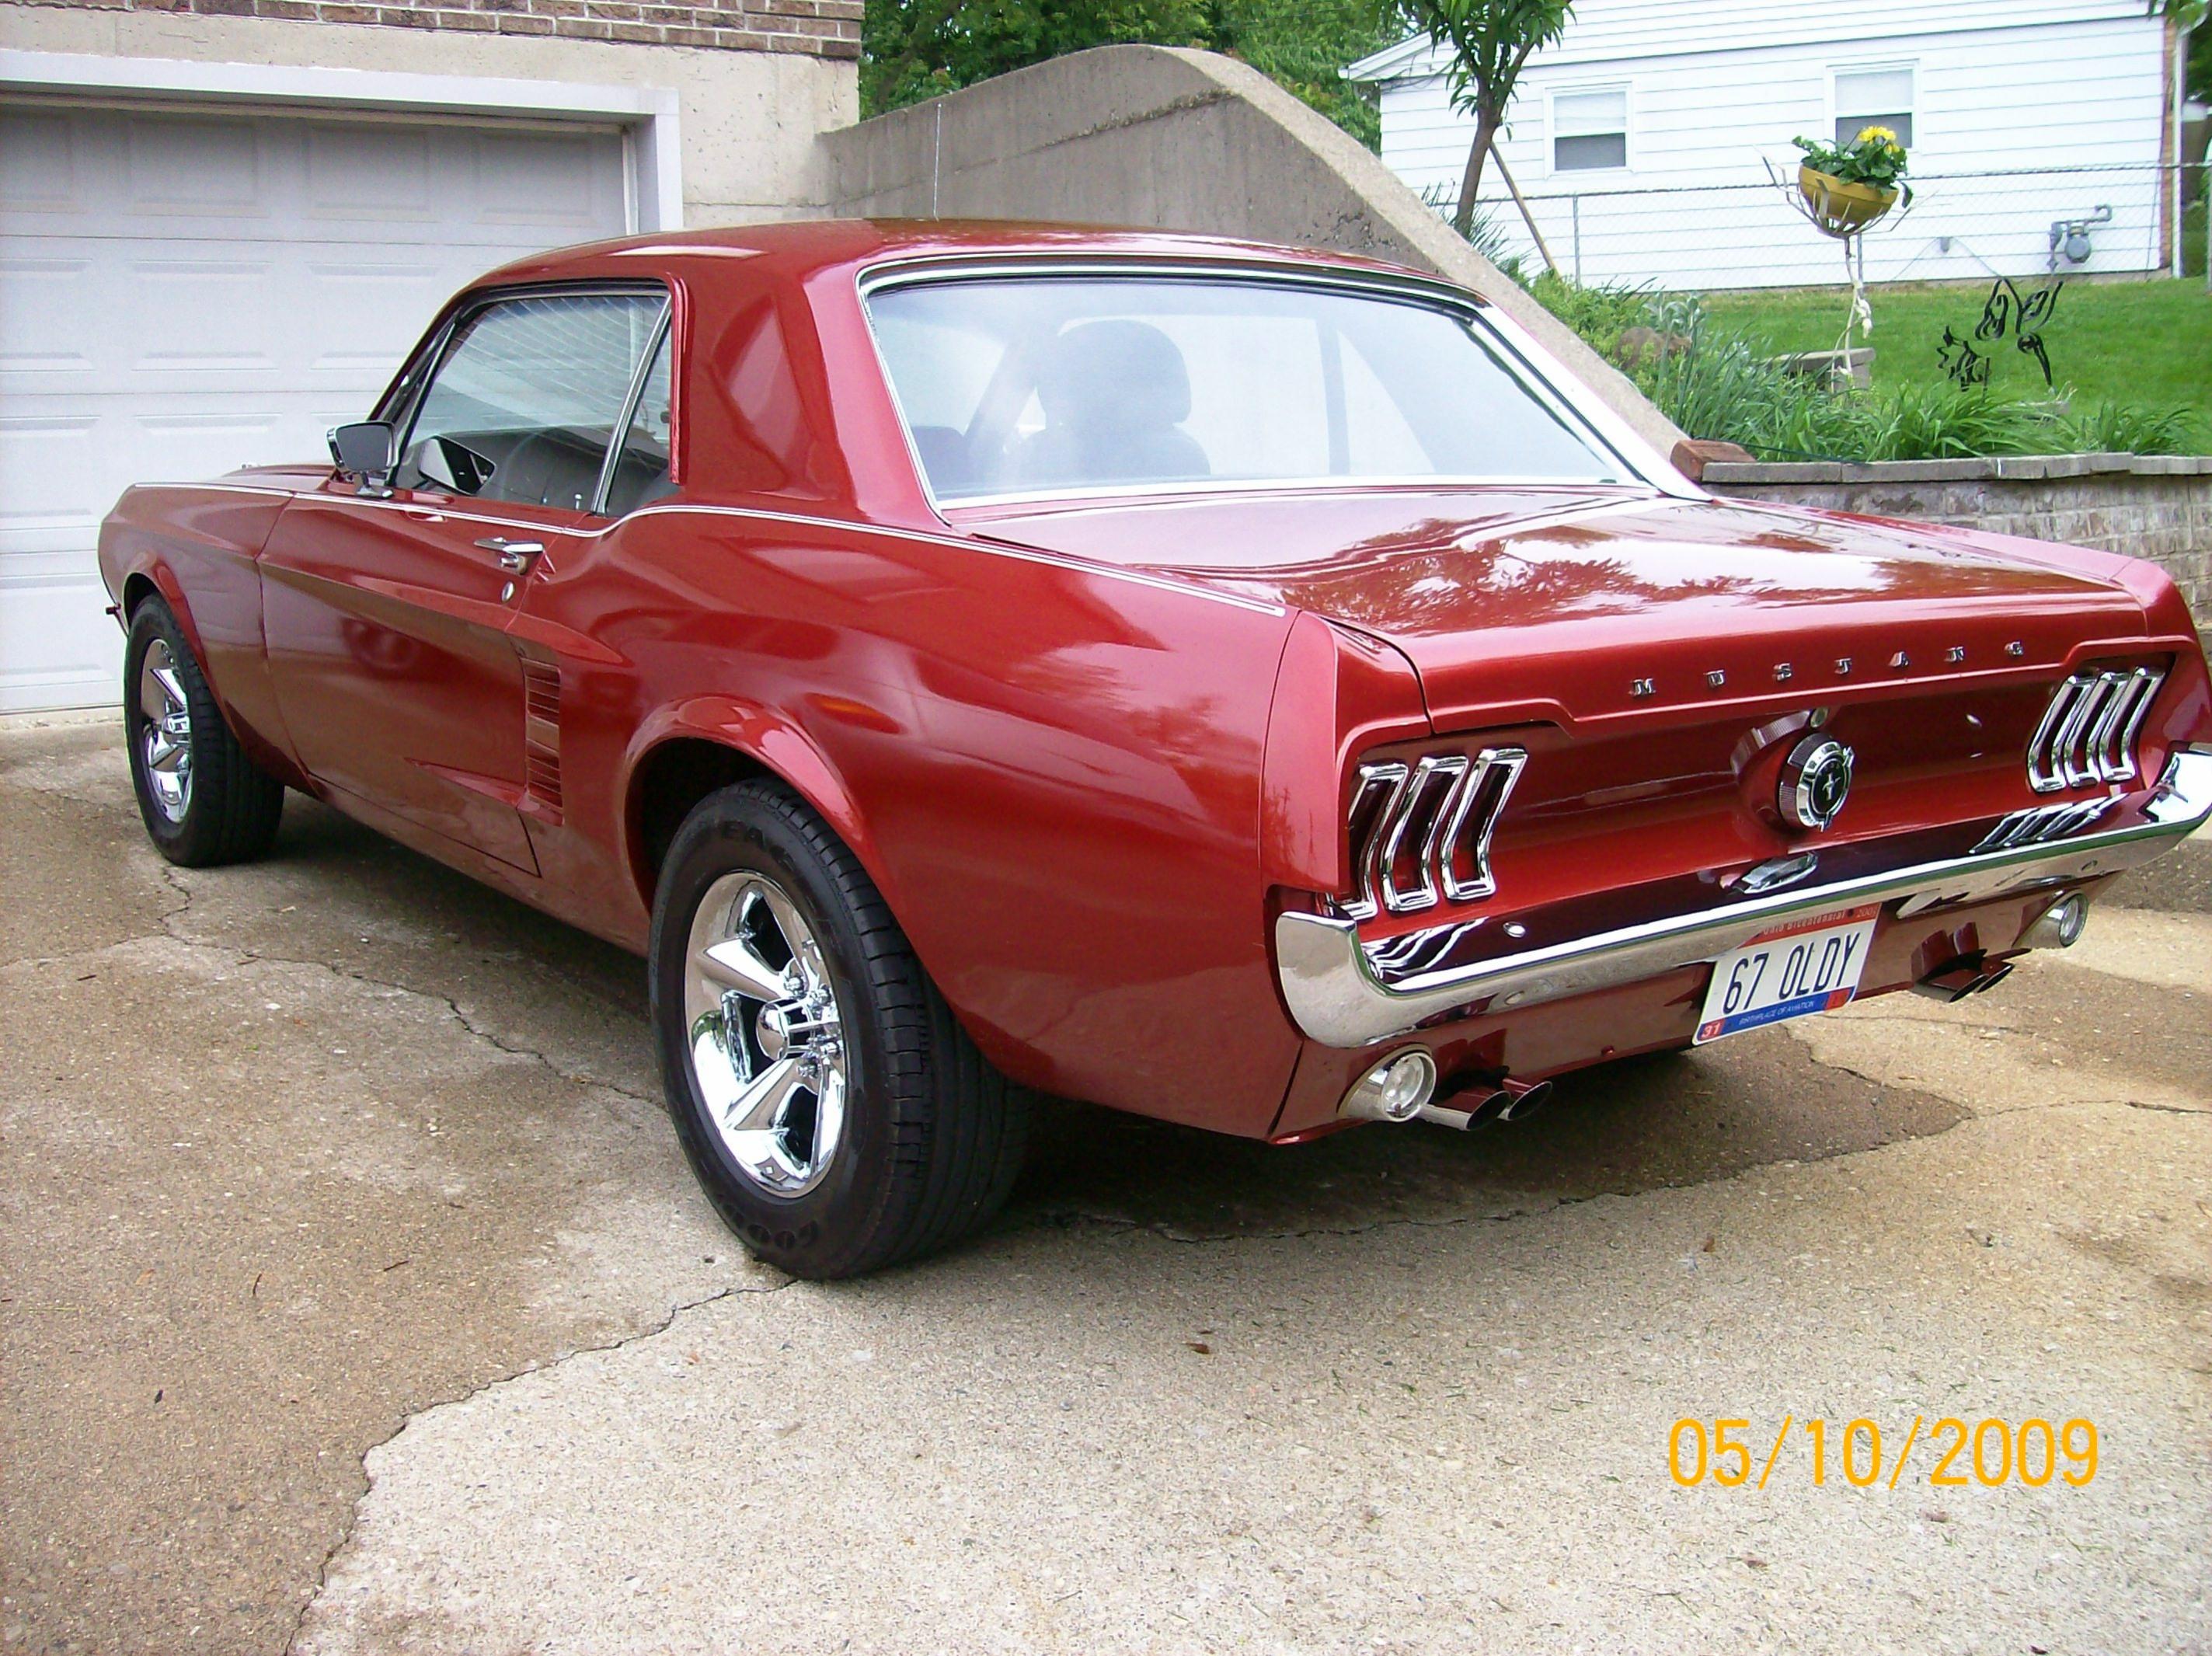 Vignettes jointes. Quelle taille de jantes pour mon coupé Mustang 1967 - 100_1757.jpg